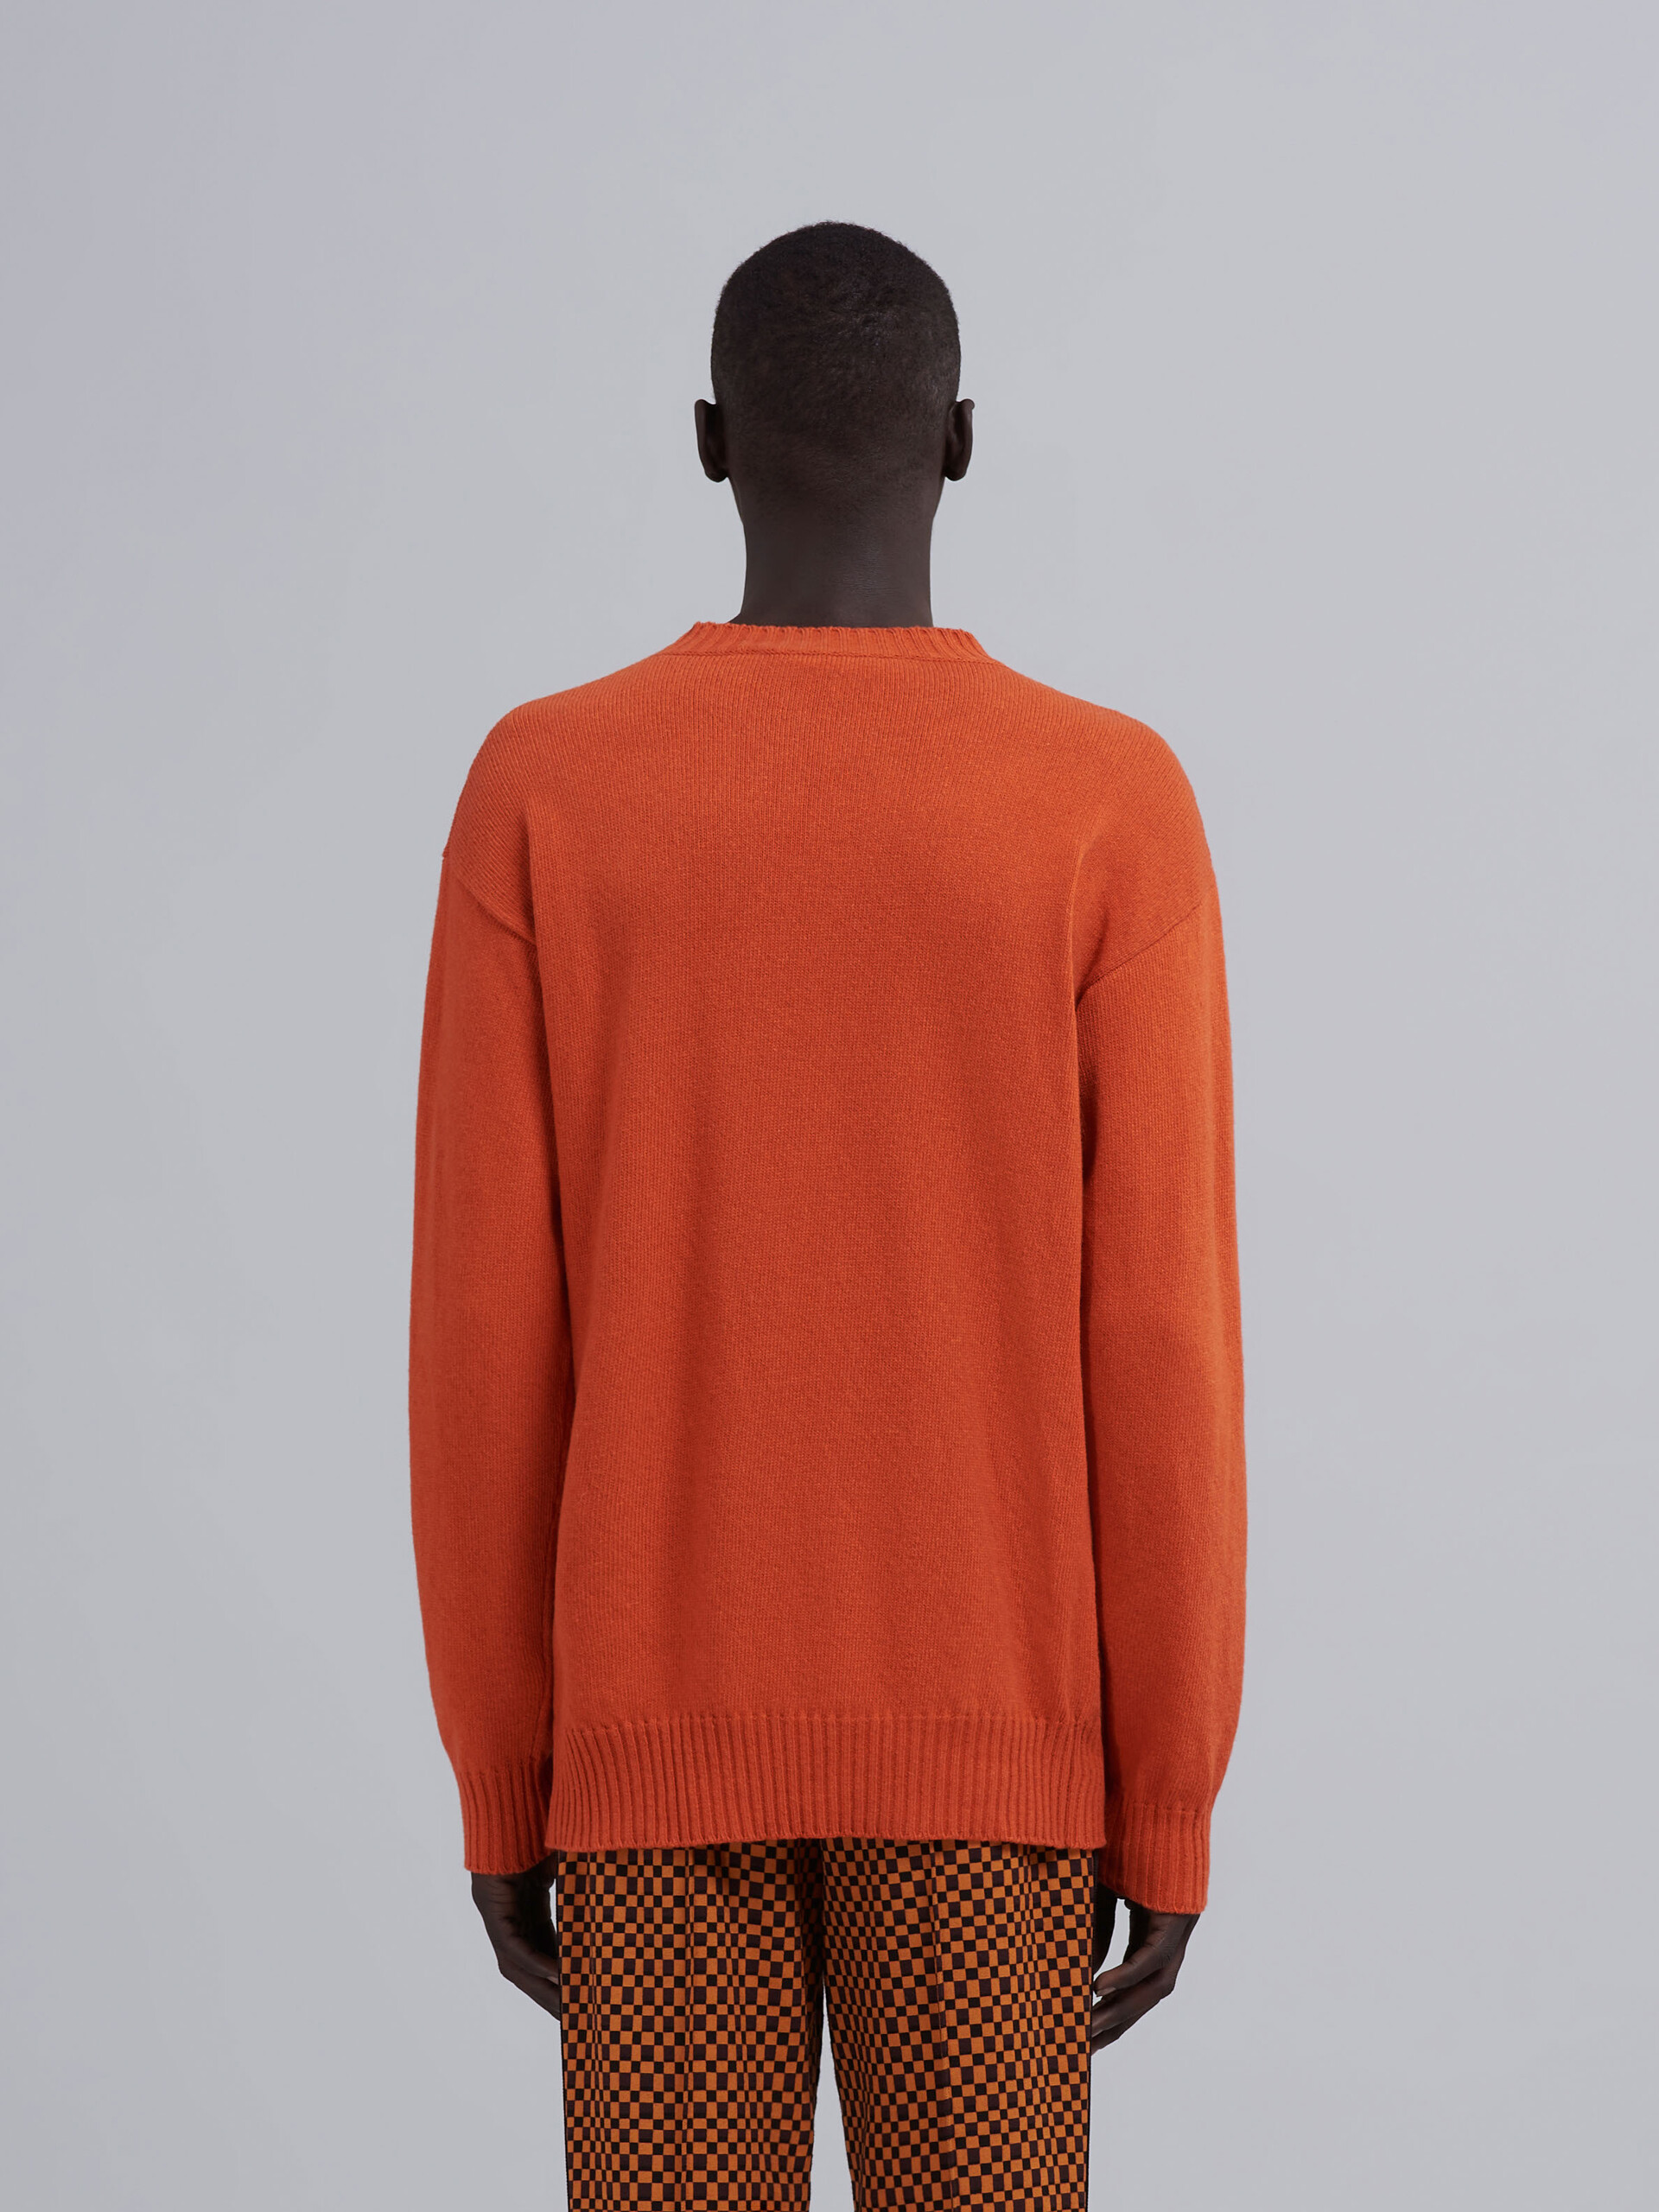 Jersey de cachemira reciclada naranja - jerseys - Image 3